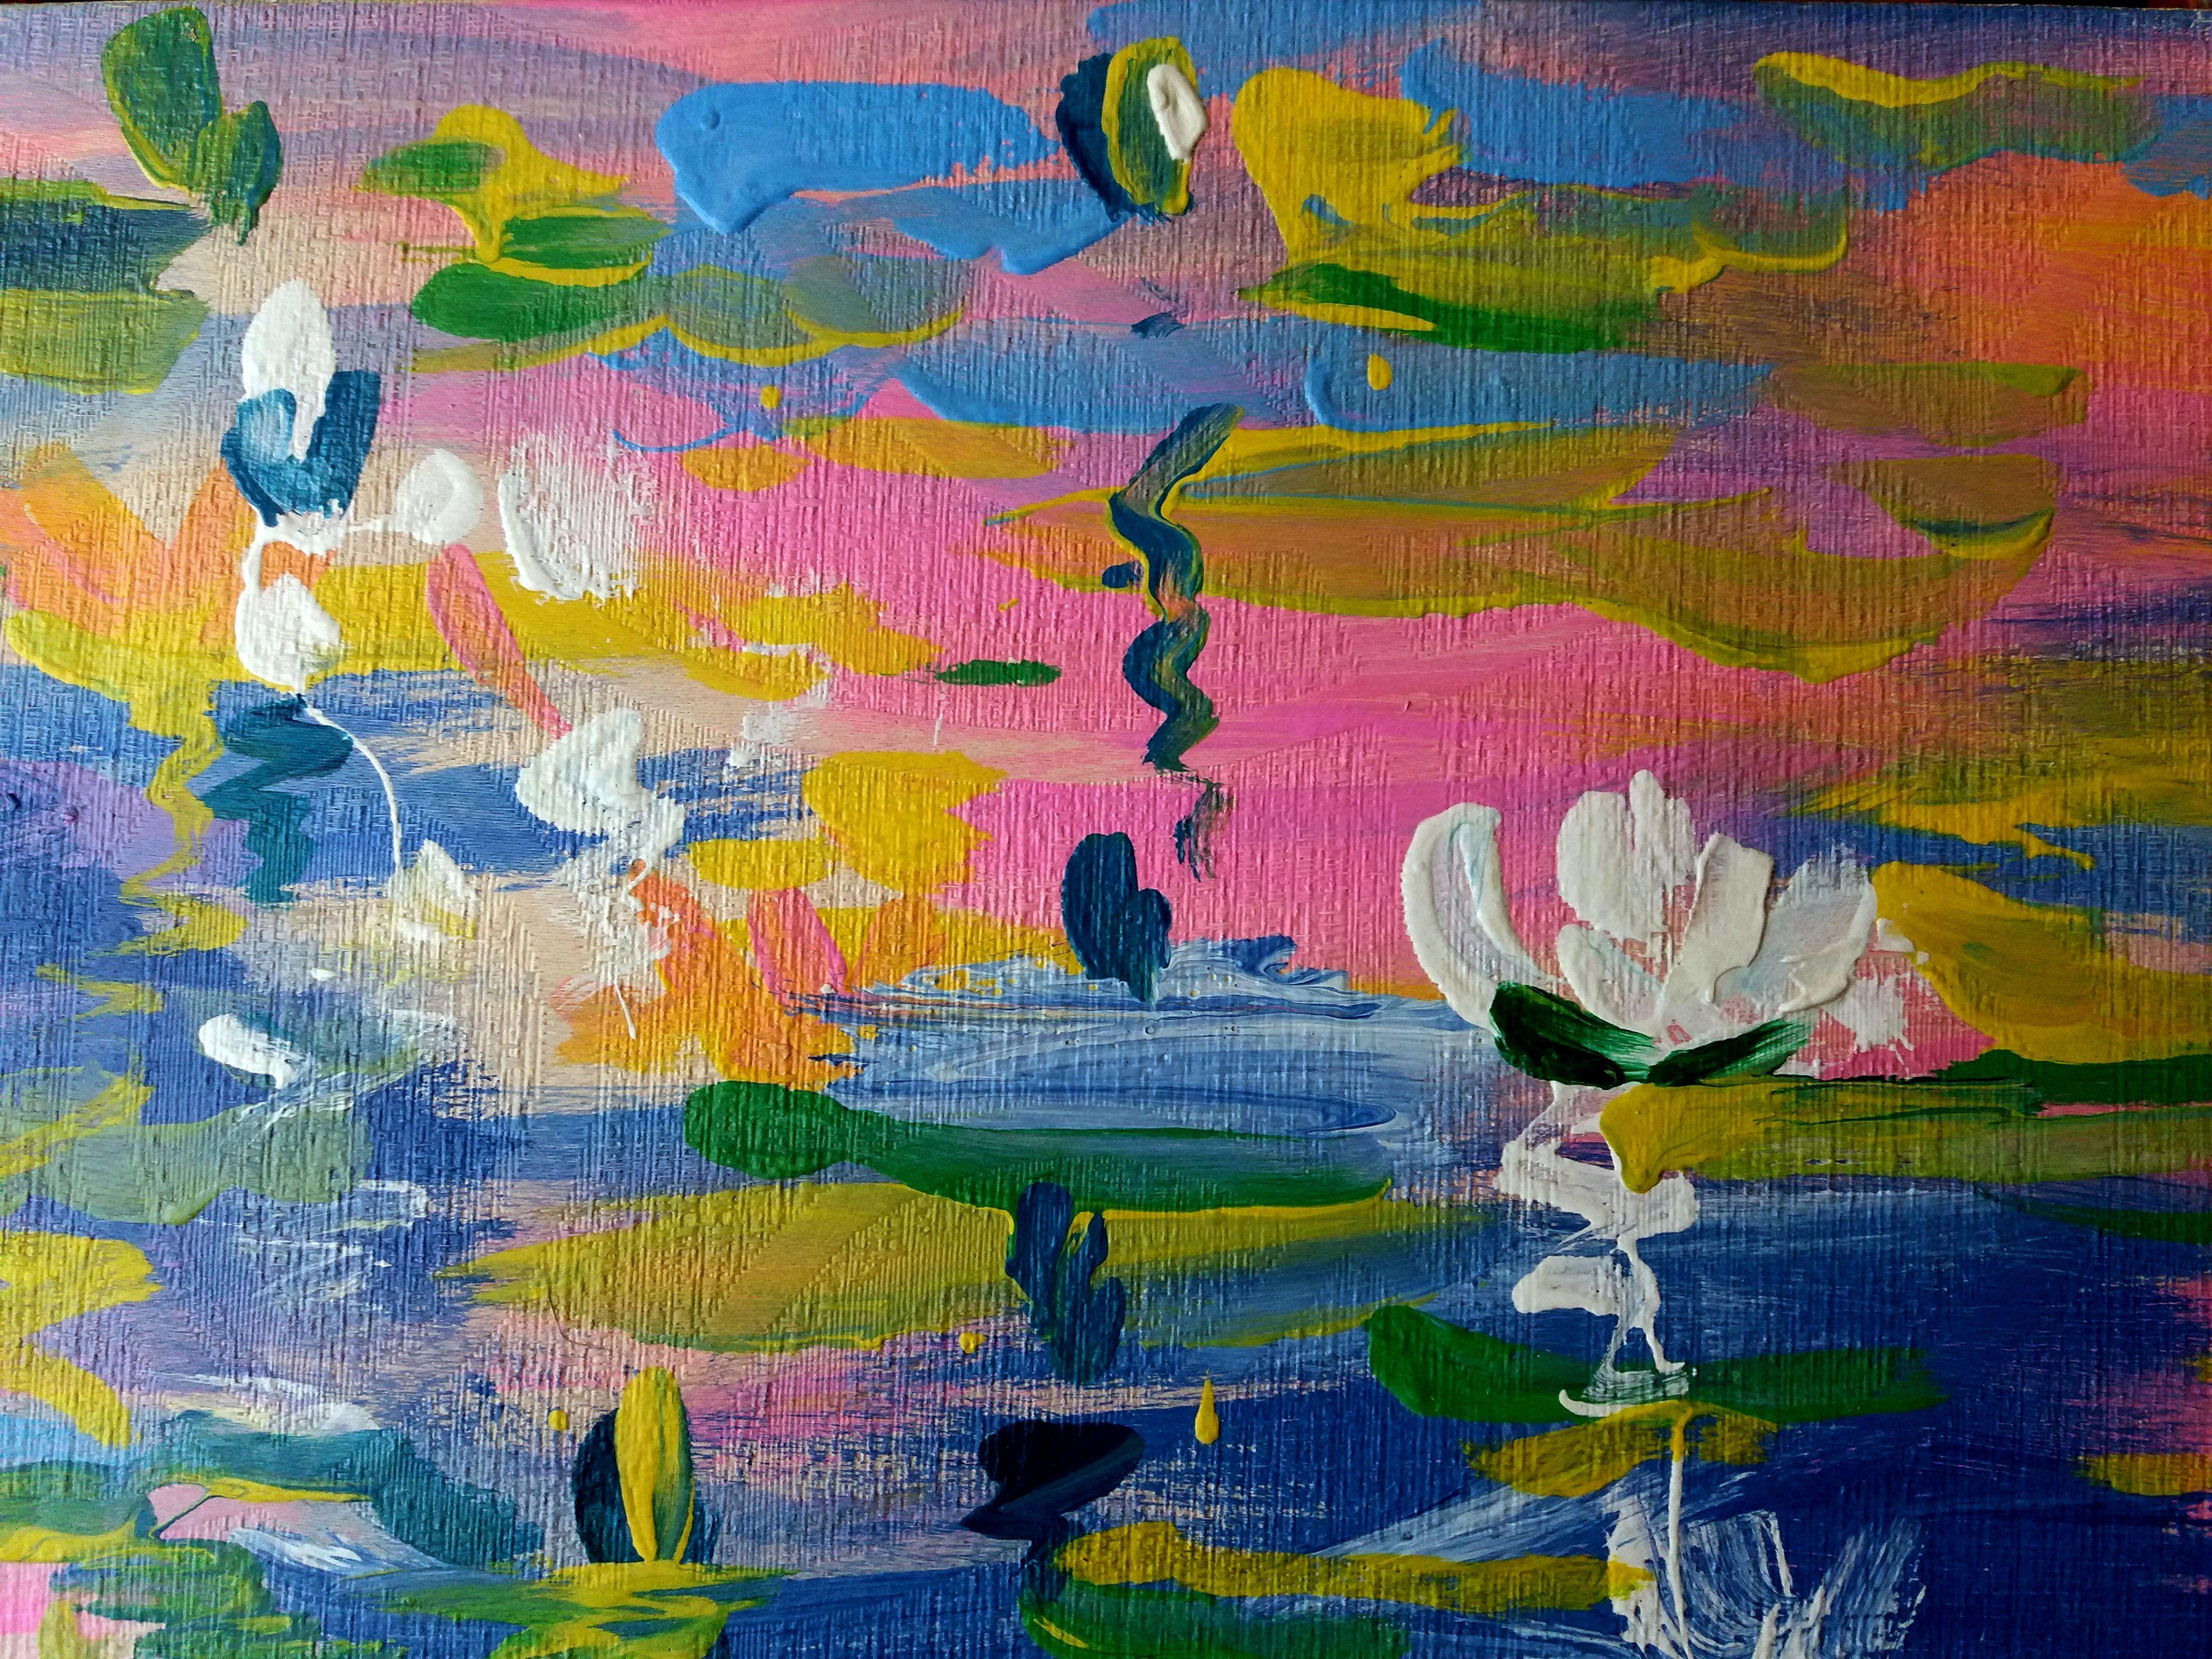 Water Lilies in the Lake - Painting by RAKHMET REDZHEPOV (RAMZI)